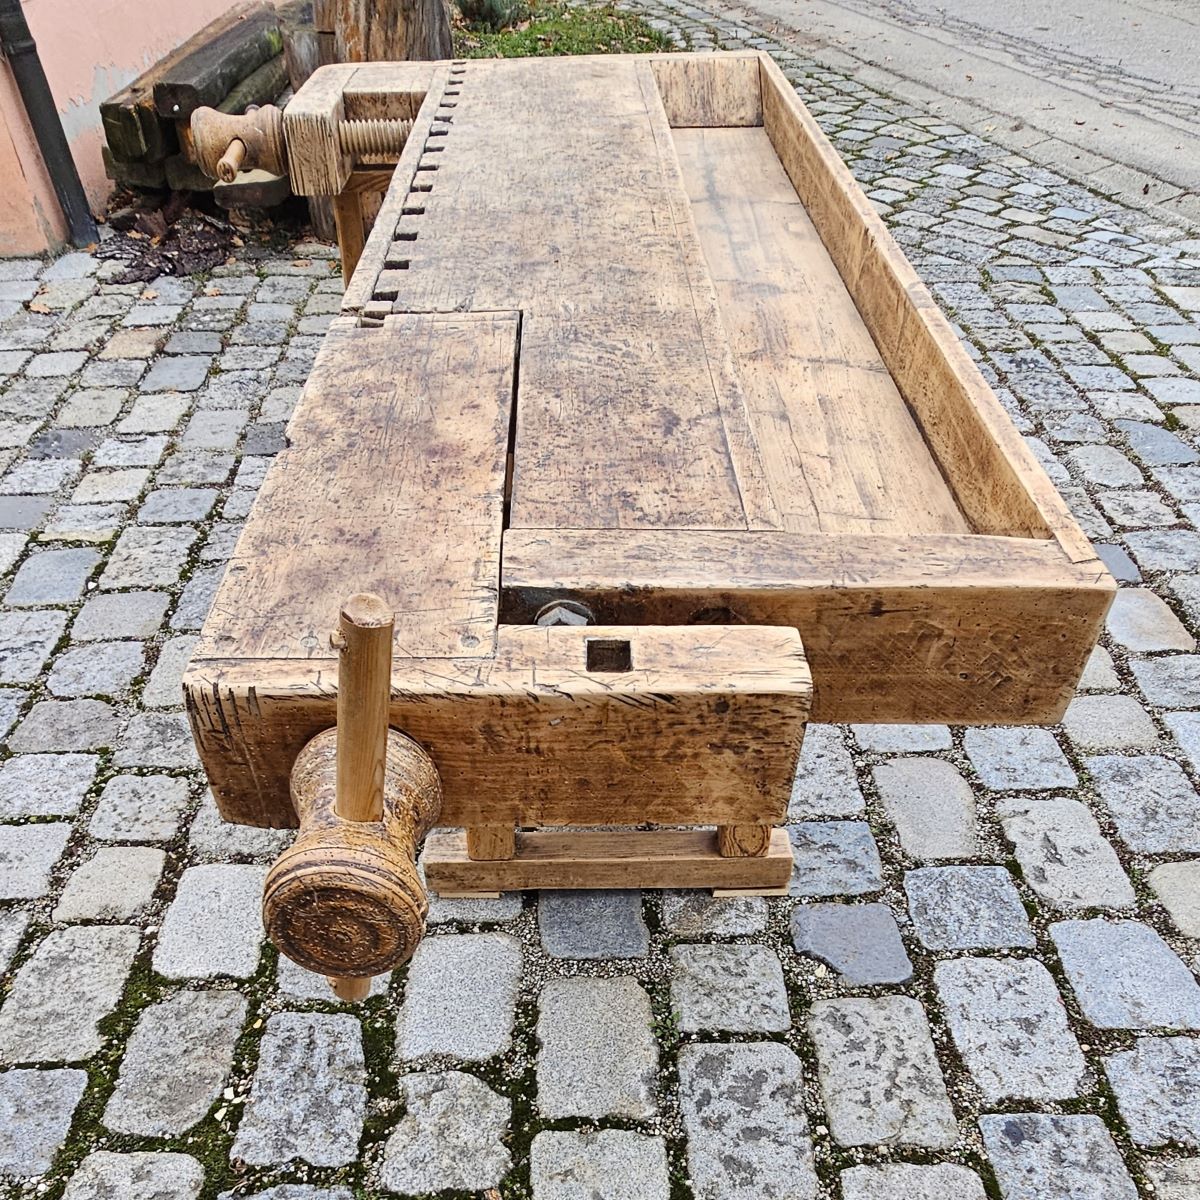 Verkauft - Alte urige antike Hobelbank aus Holz mit Holz Schraubstöcken - 122